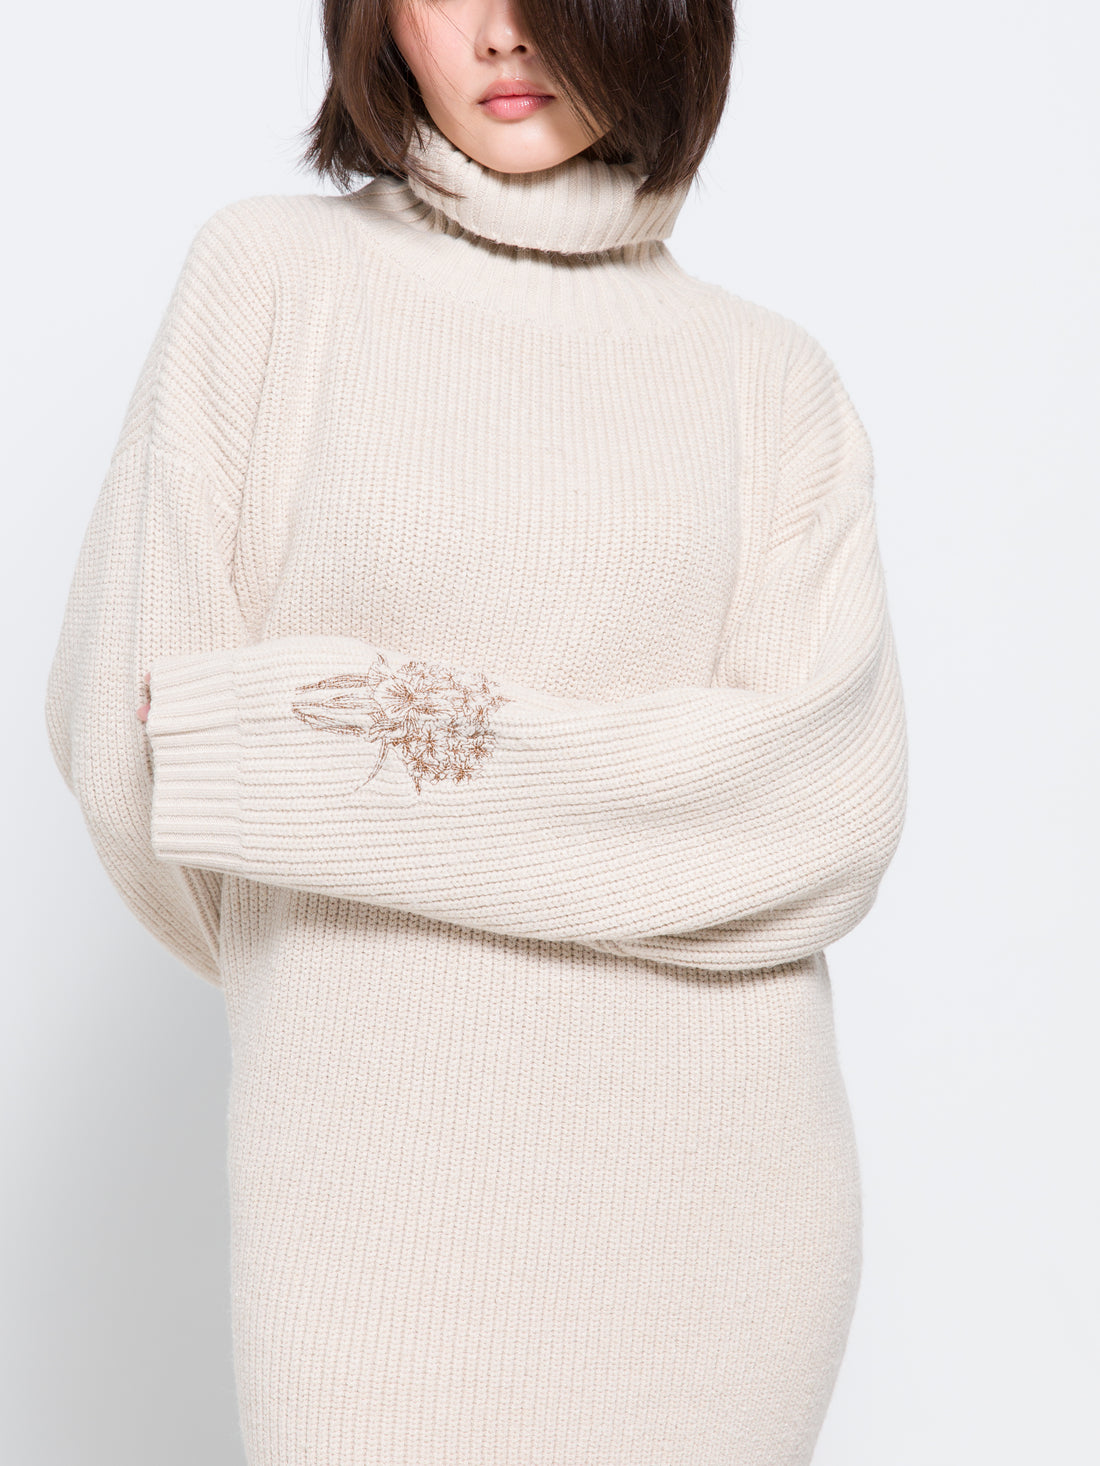 elegant knitted dress / oatmeal